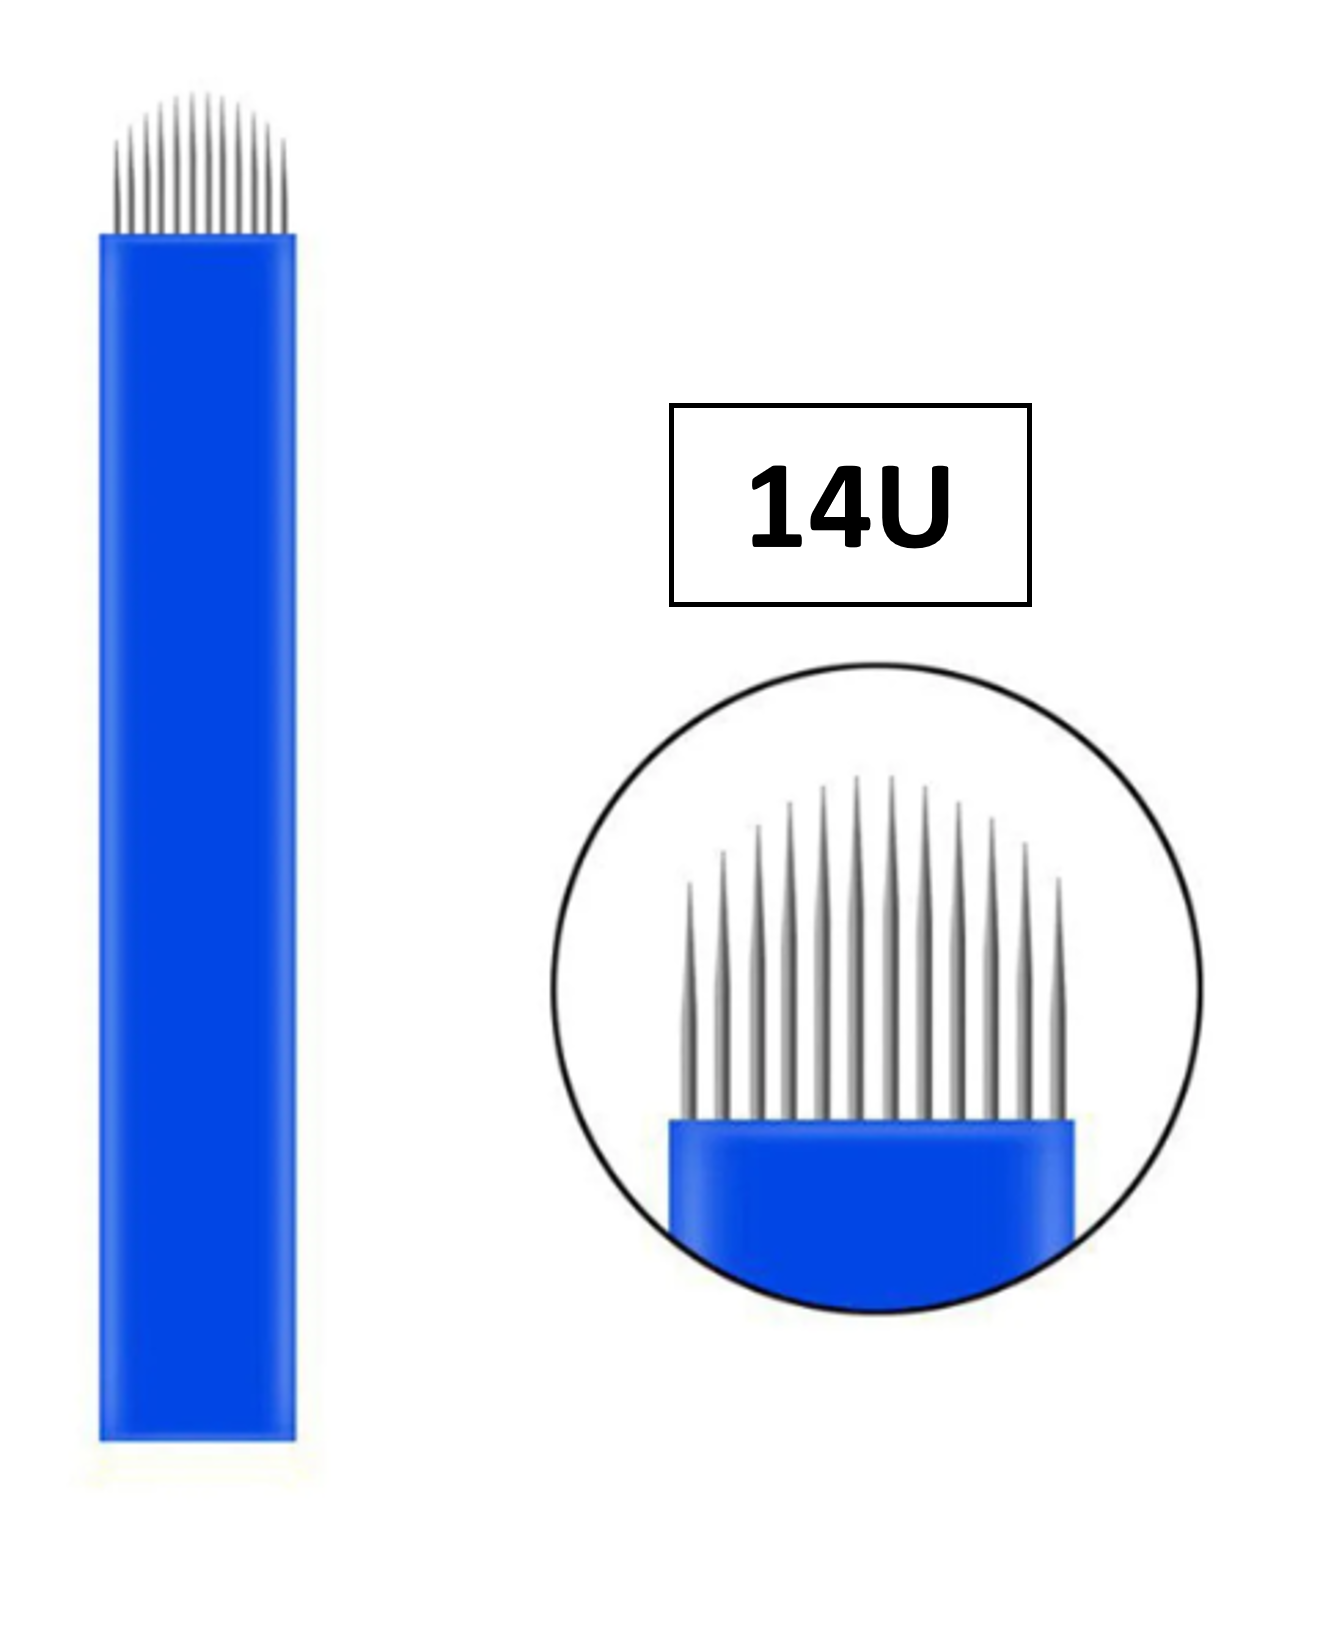 Kozmetiklab Microblading İğnesi 14U (0,20mm)